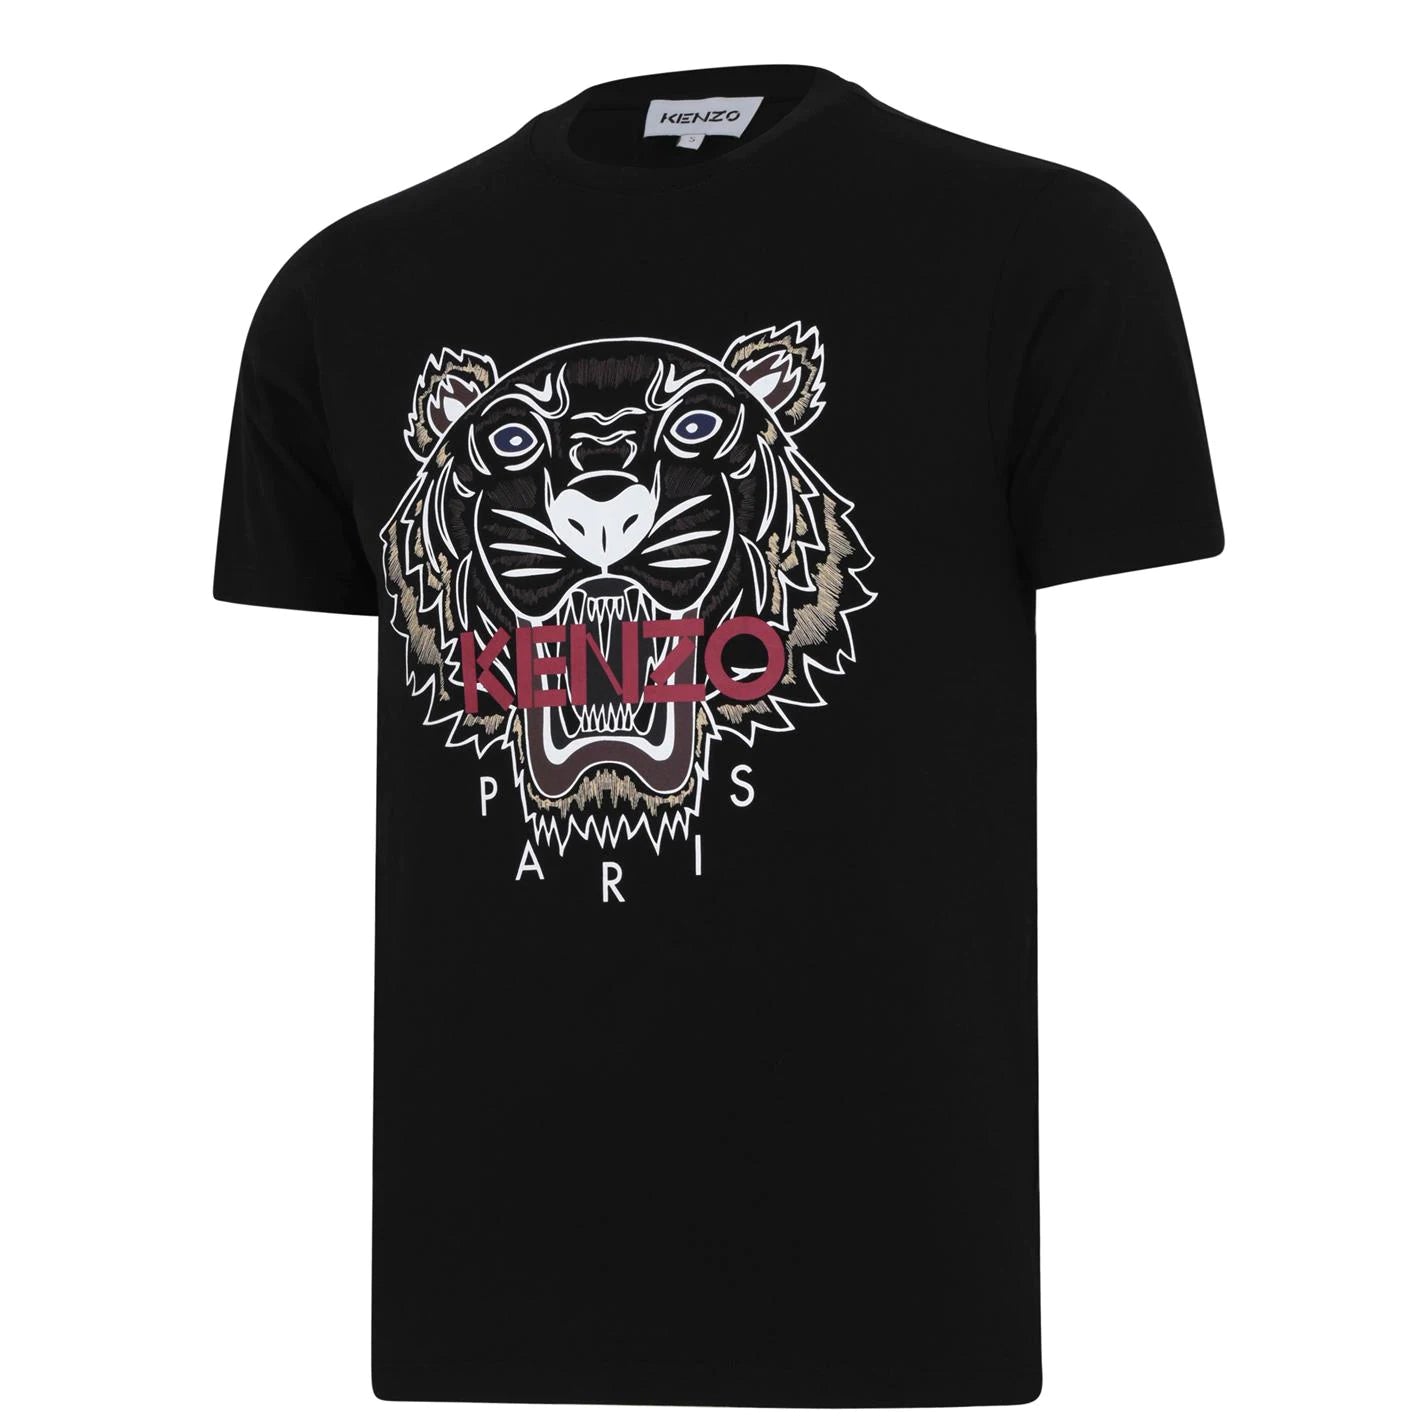 Kenzo Paris Tiger logo T-shirt